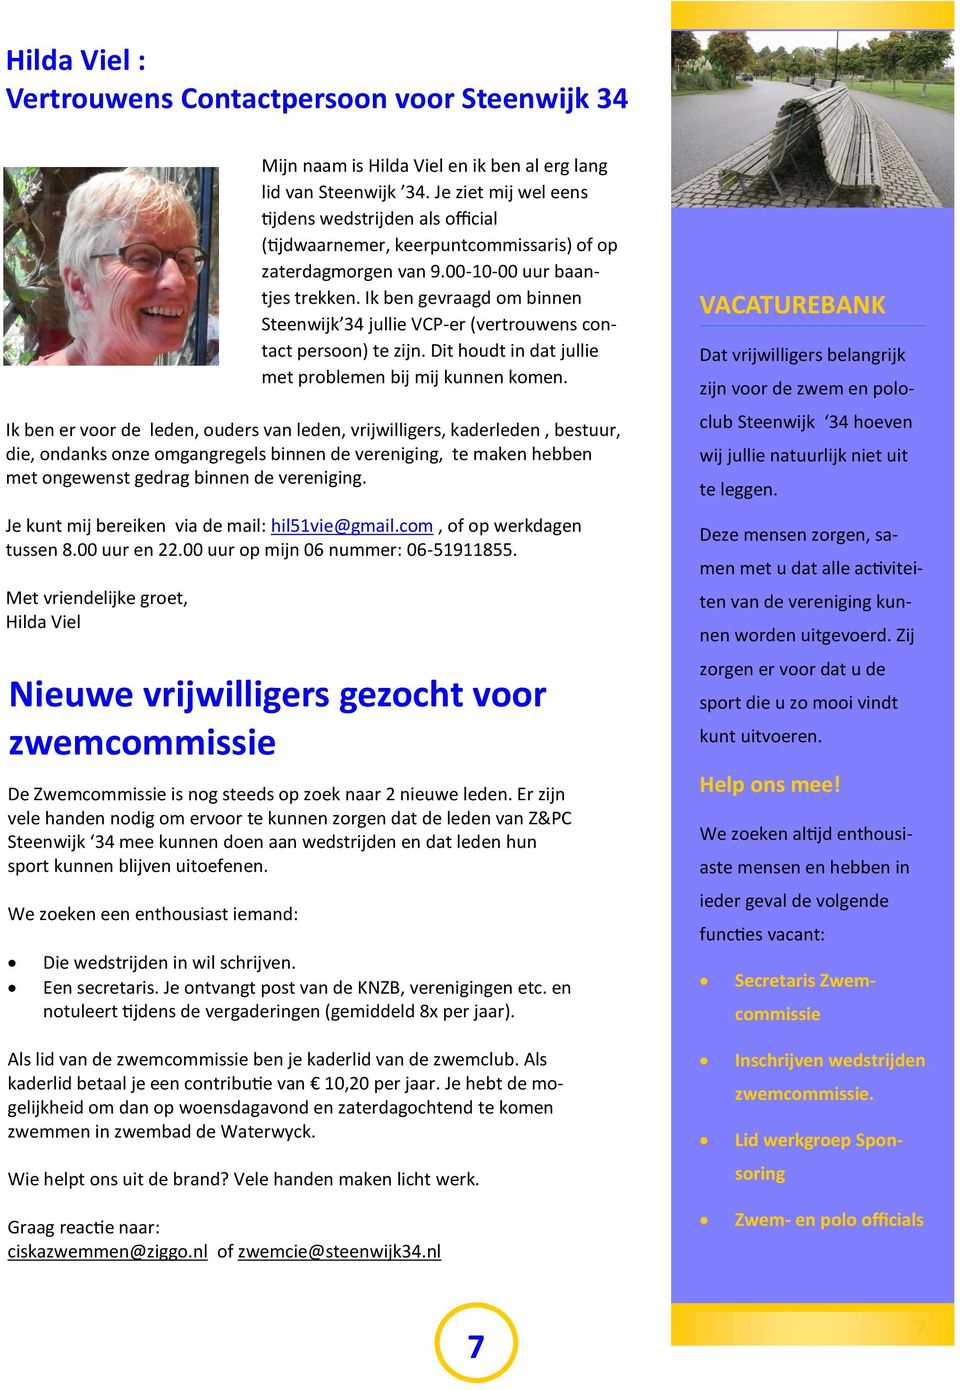 Ik ben gevraagd om binnen Steenwijk 34 jullie VCP-er (vertrouwens contact persoon) te zijn. Dit houdt in dat jullie met problemen bij mij kunnen komen.